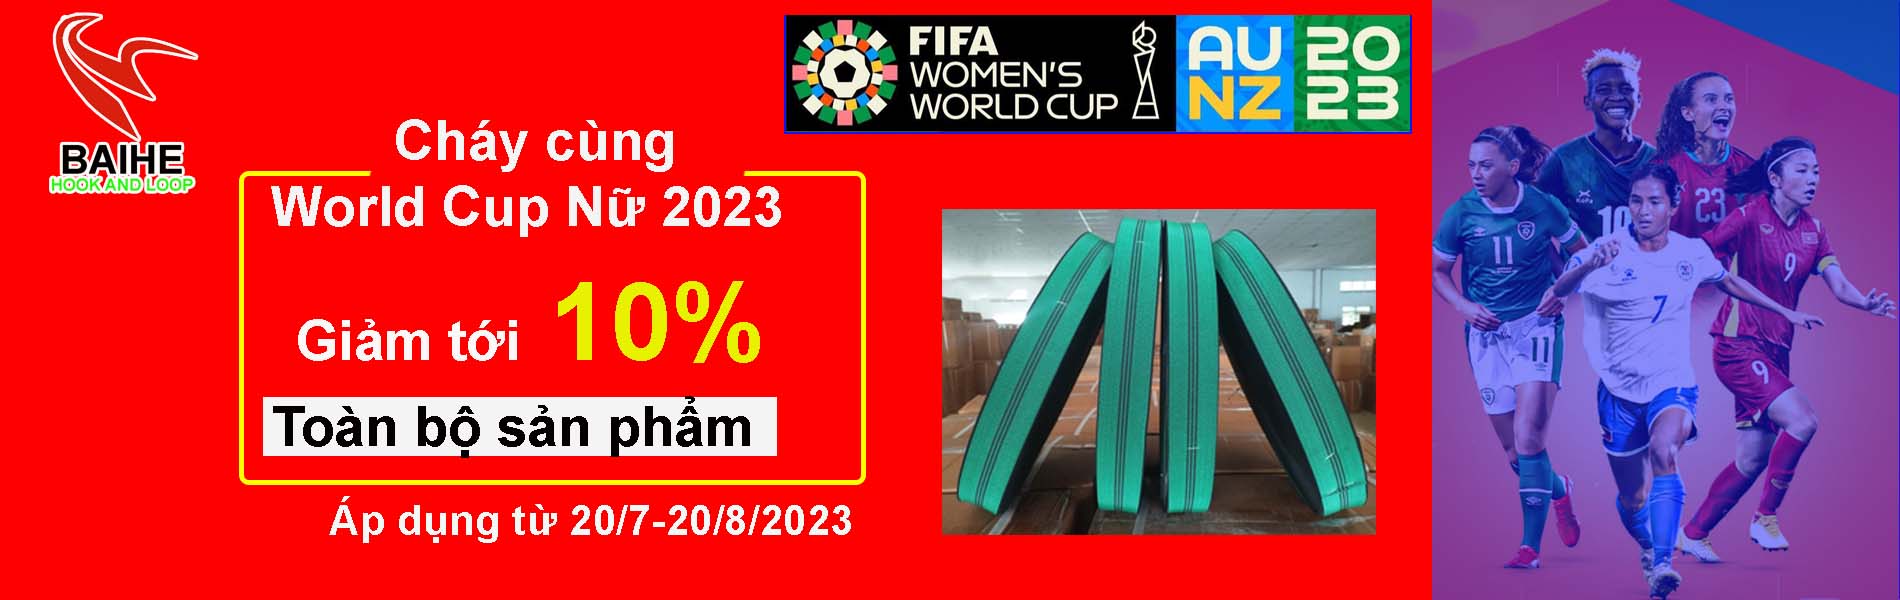 Cháy cùng World Cup nữ 2023